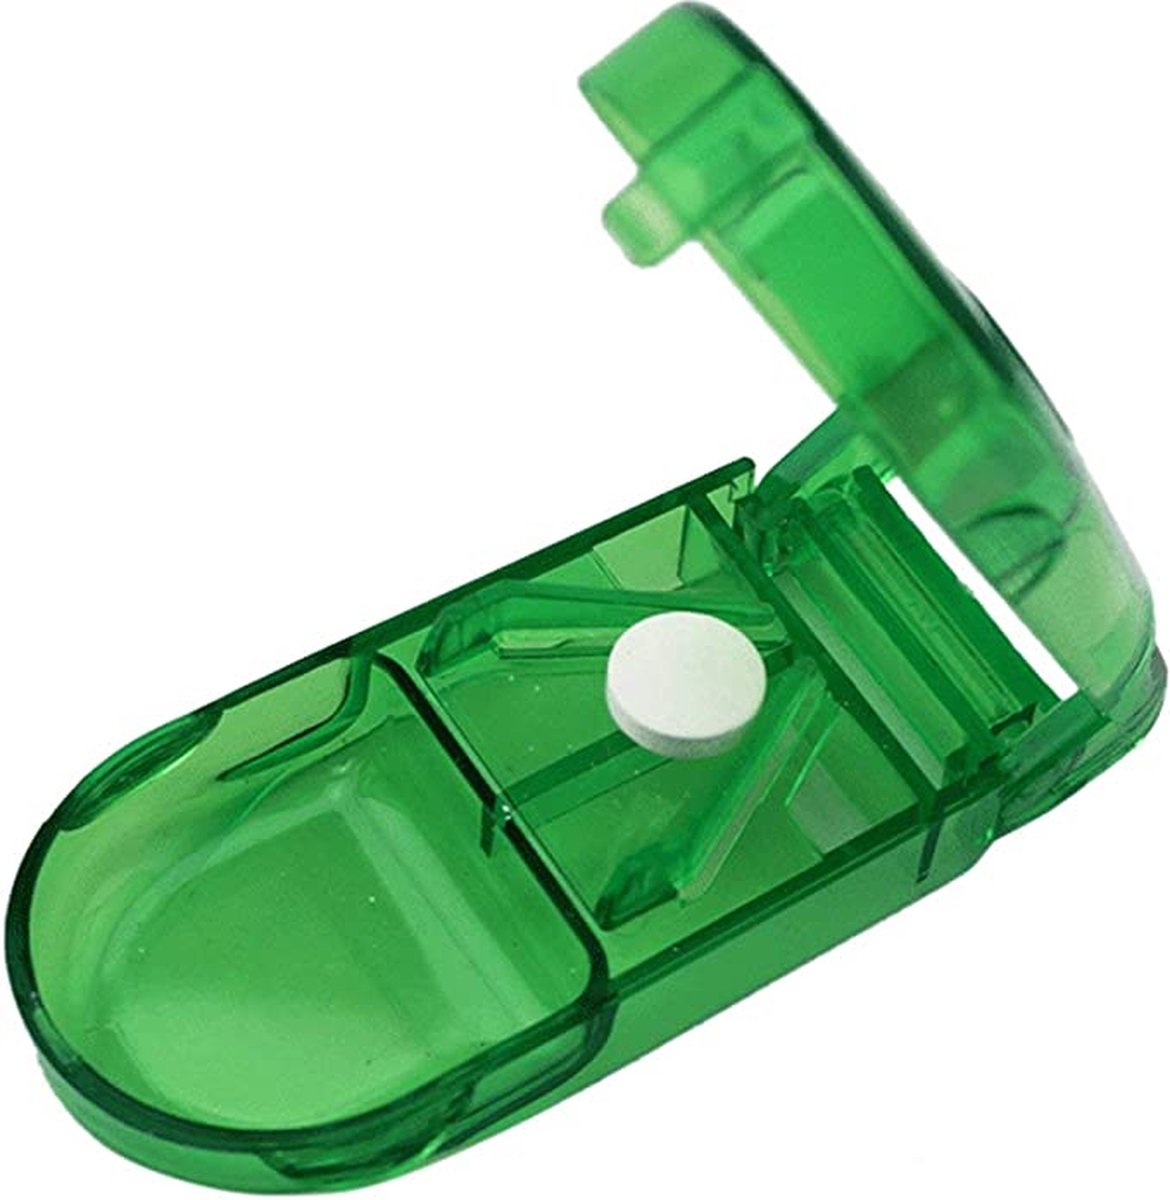 Pillensnijder met Bewaardoos – Pillensplijter – Tablettensplitter – 1 Stuk – Groen